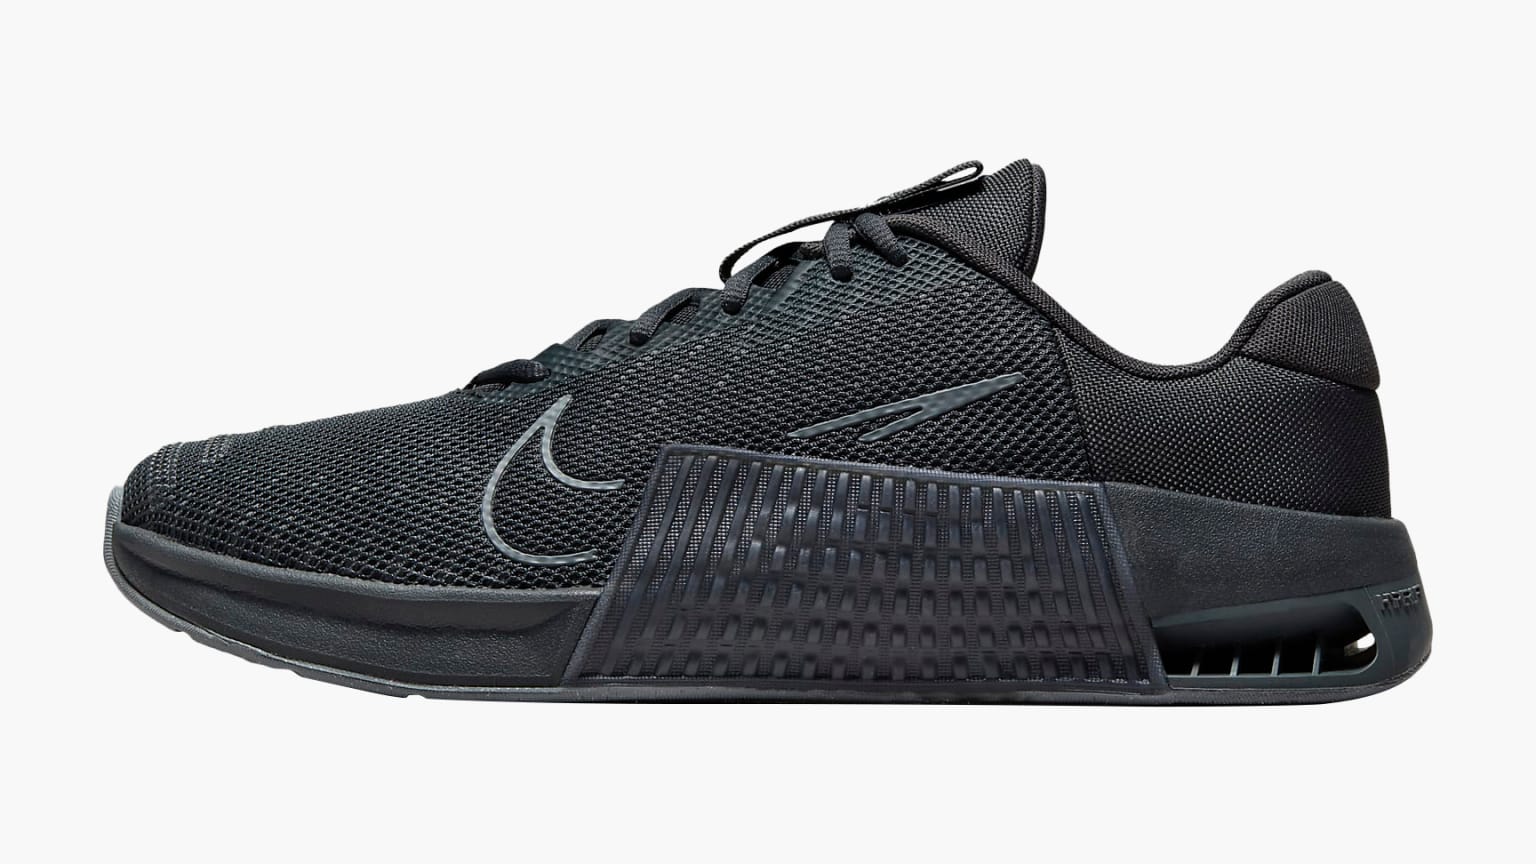 Nike Metcon 9 gris zapatillas cross training hombre